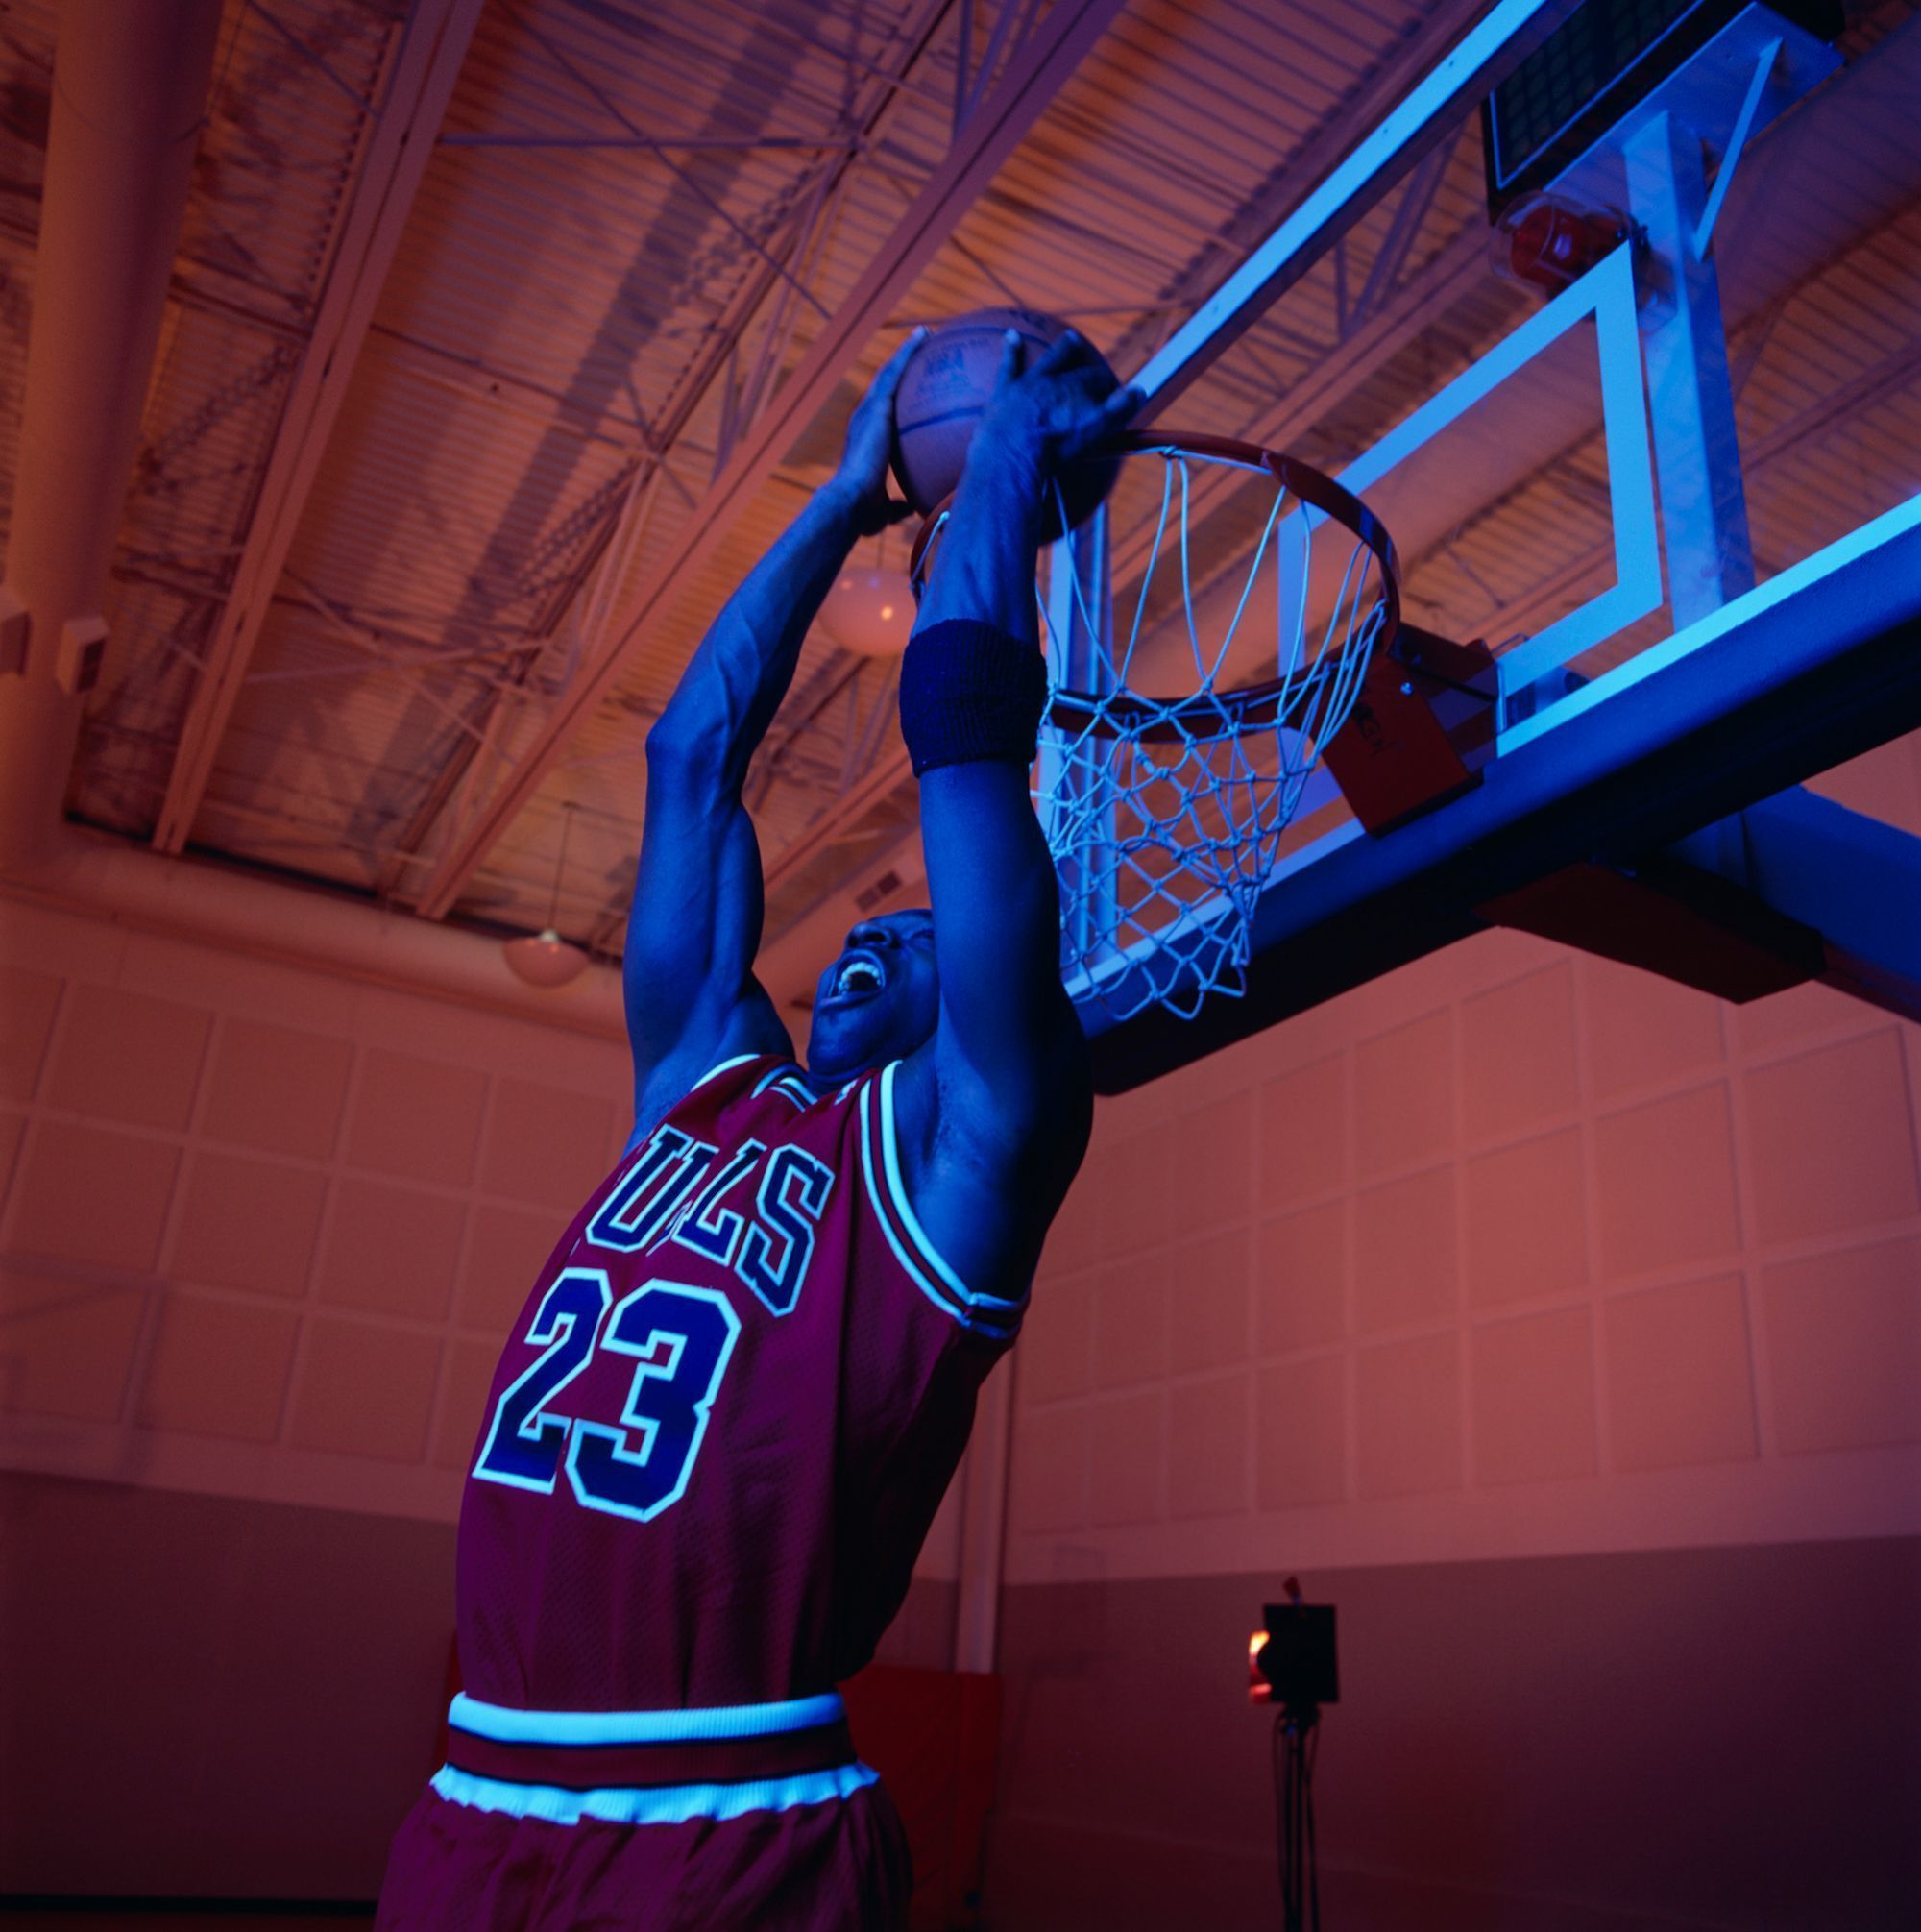 A man in a Bulls jersey is dunking a basketball through a hoop. - Michael Jordan